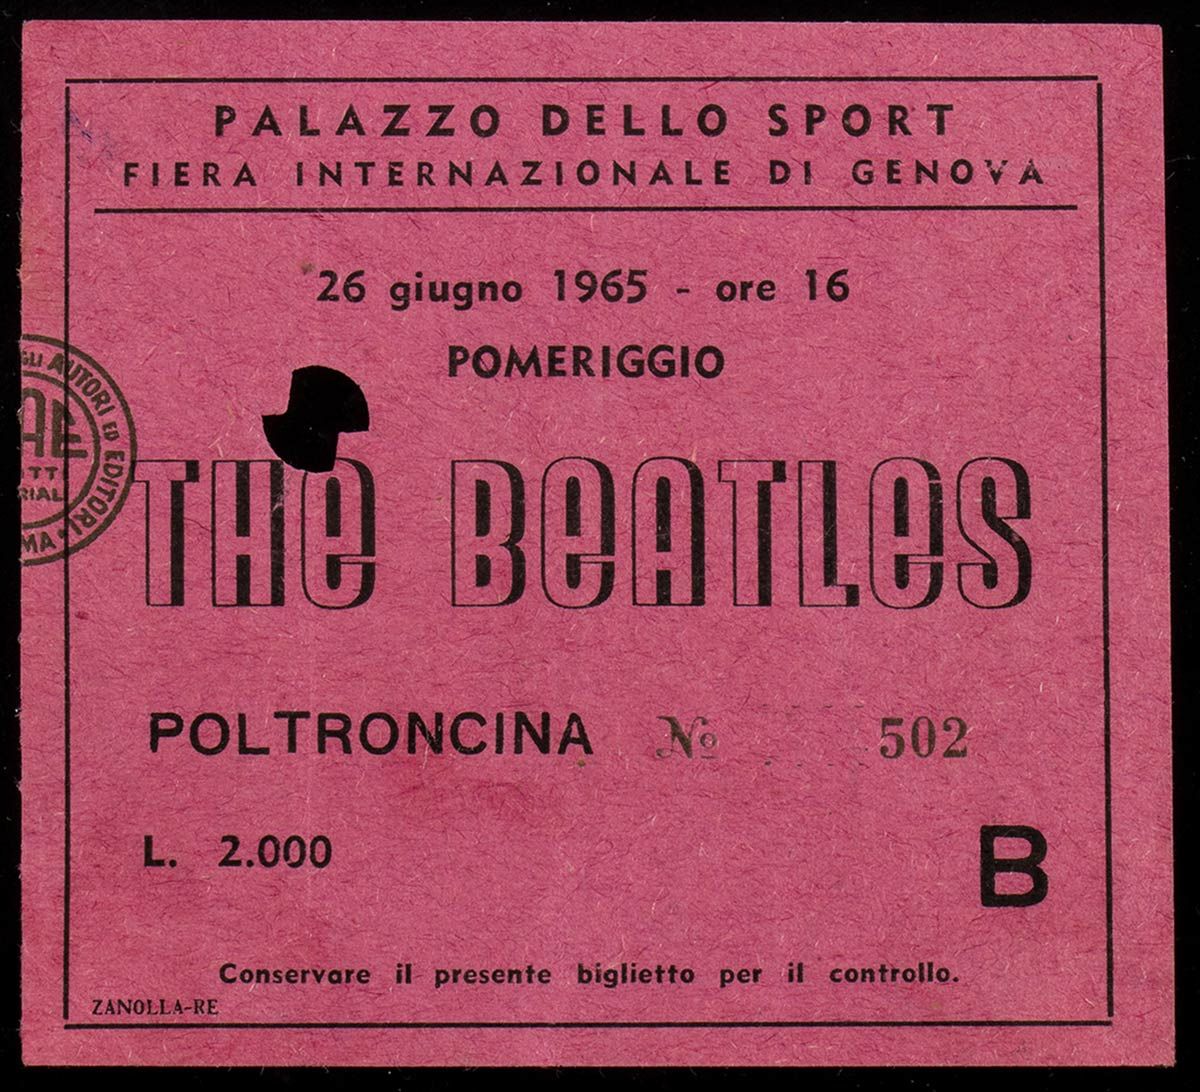 The Beatles: Genoa concert ticket, June 26, 1965 Ticket for the BEATLES concert &hellip;